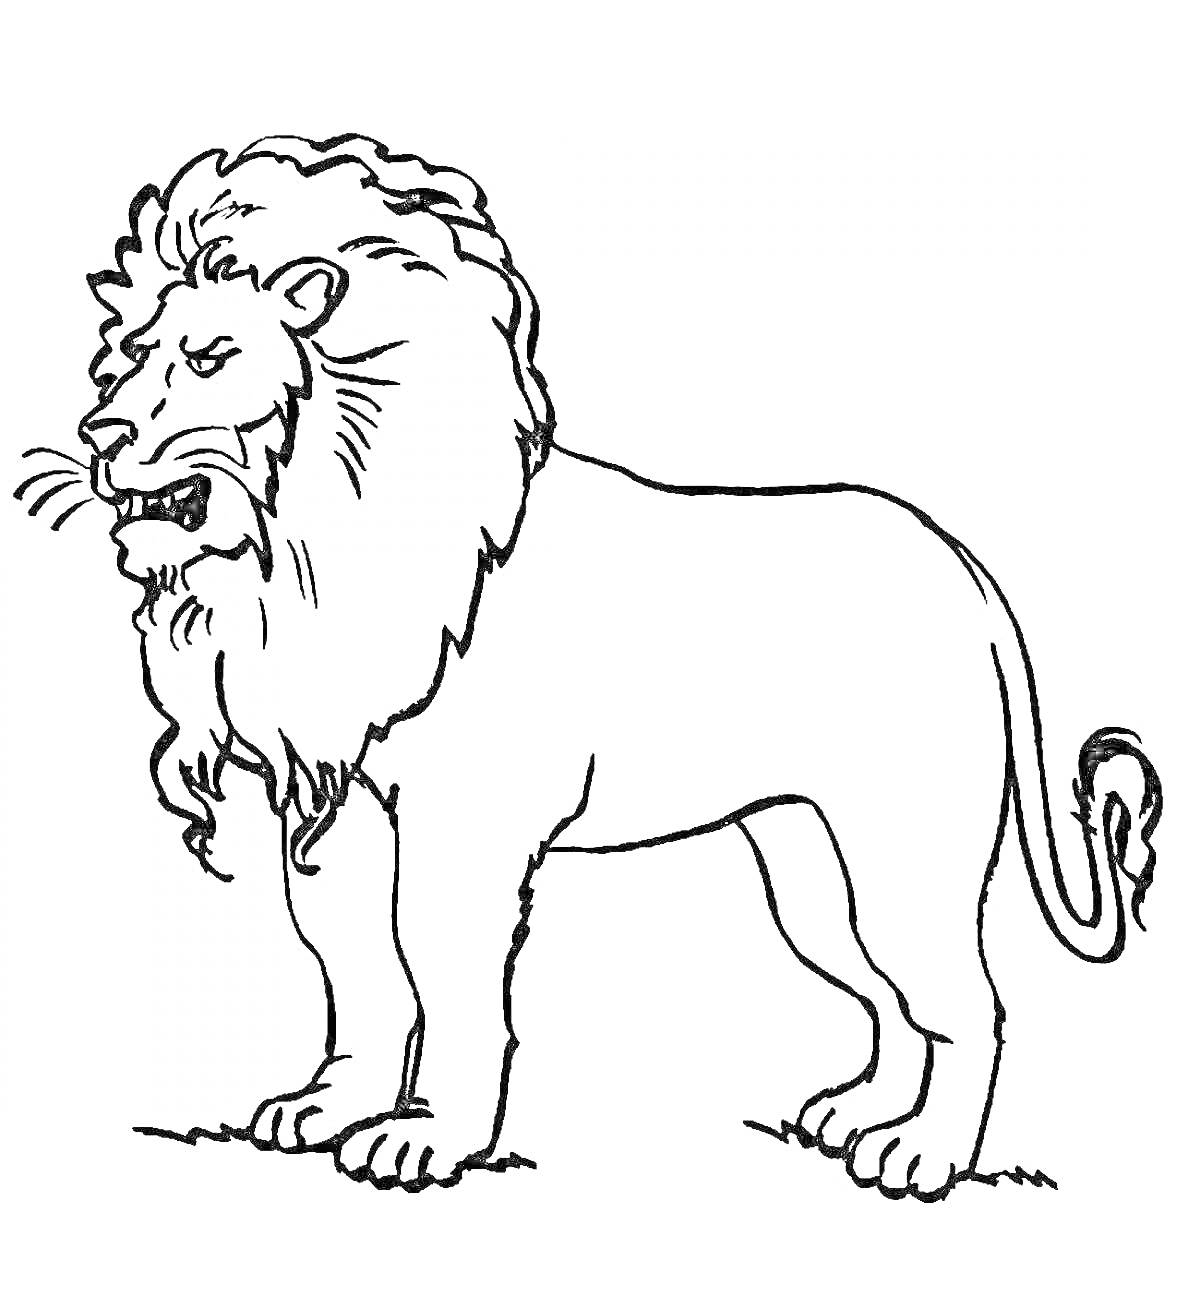 Раскраска Раскраска с изображением льва, стоящего на земле, с пышной гривой и поднятыми ушами